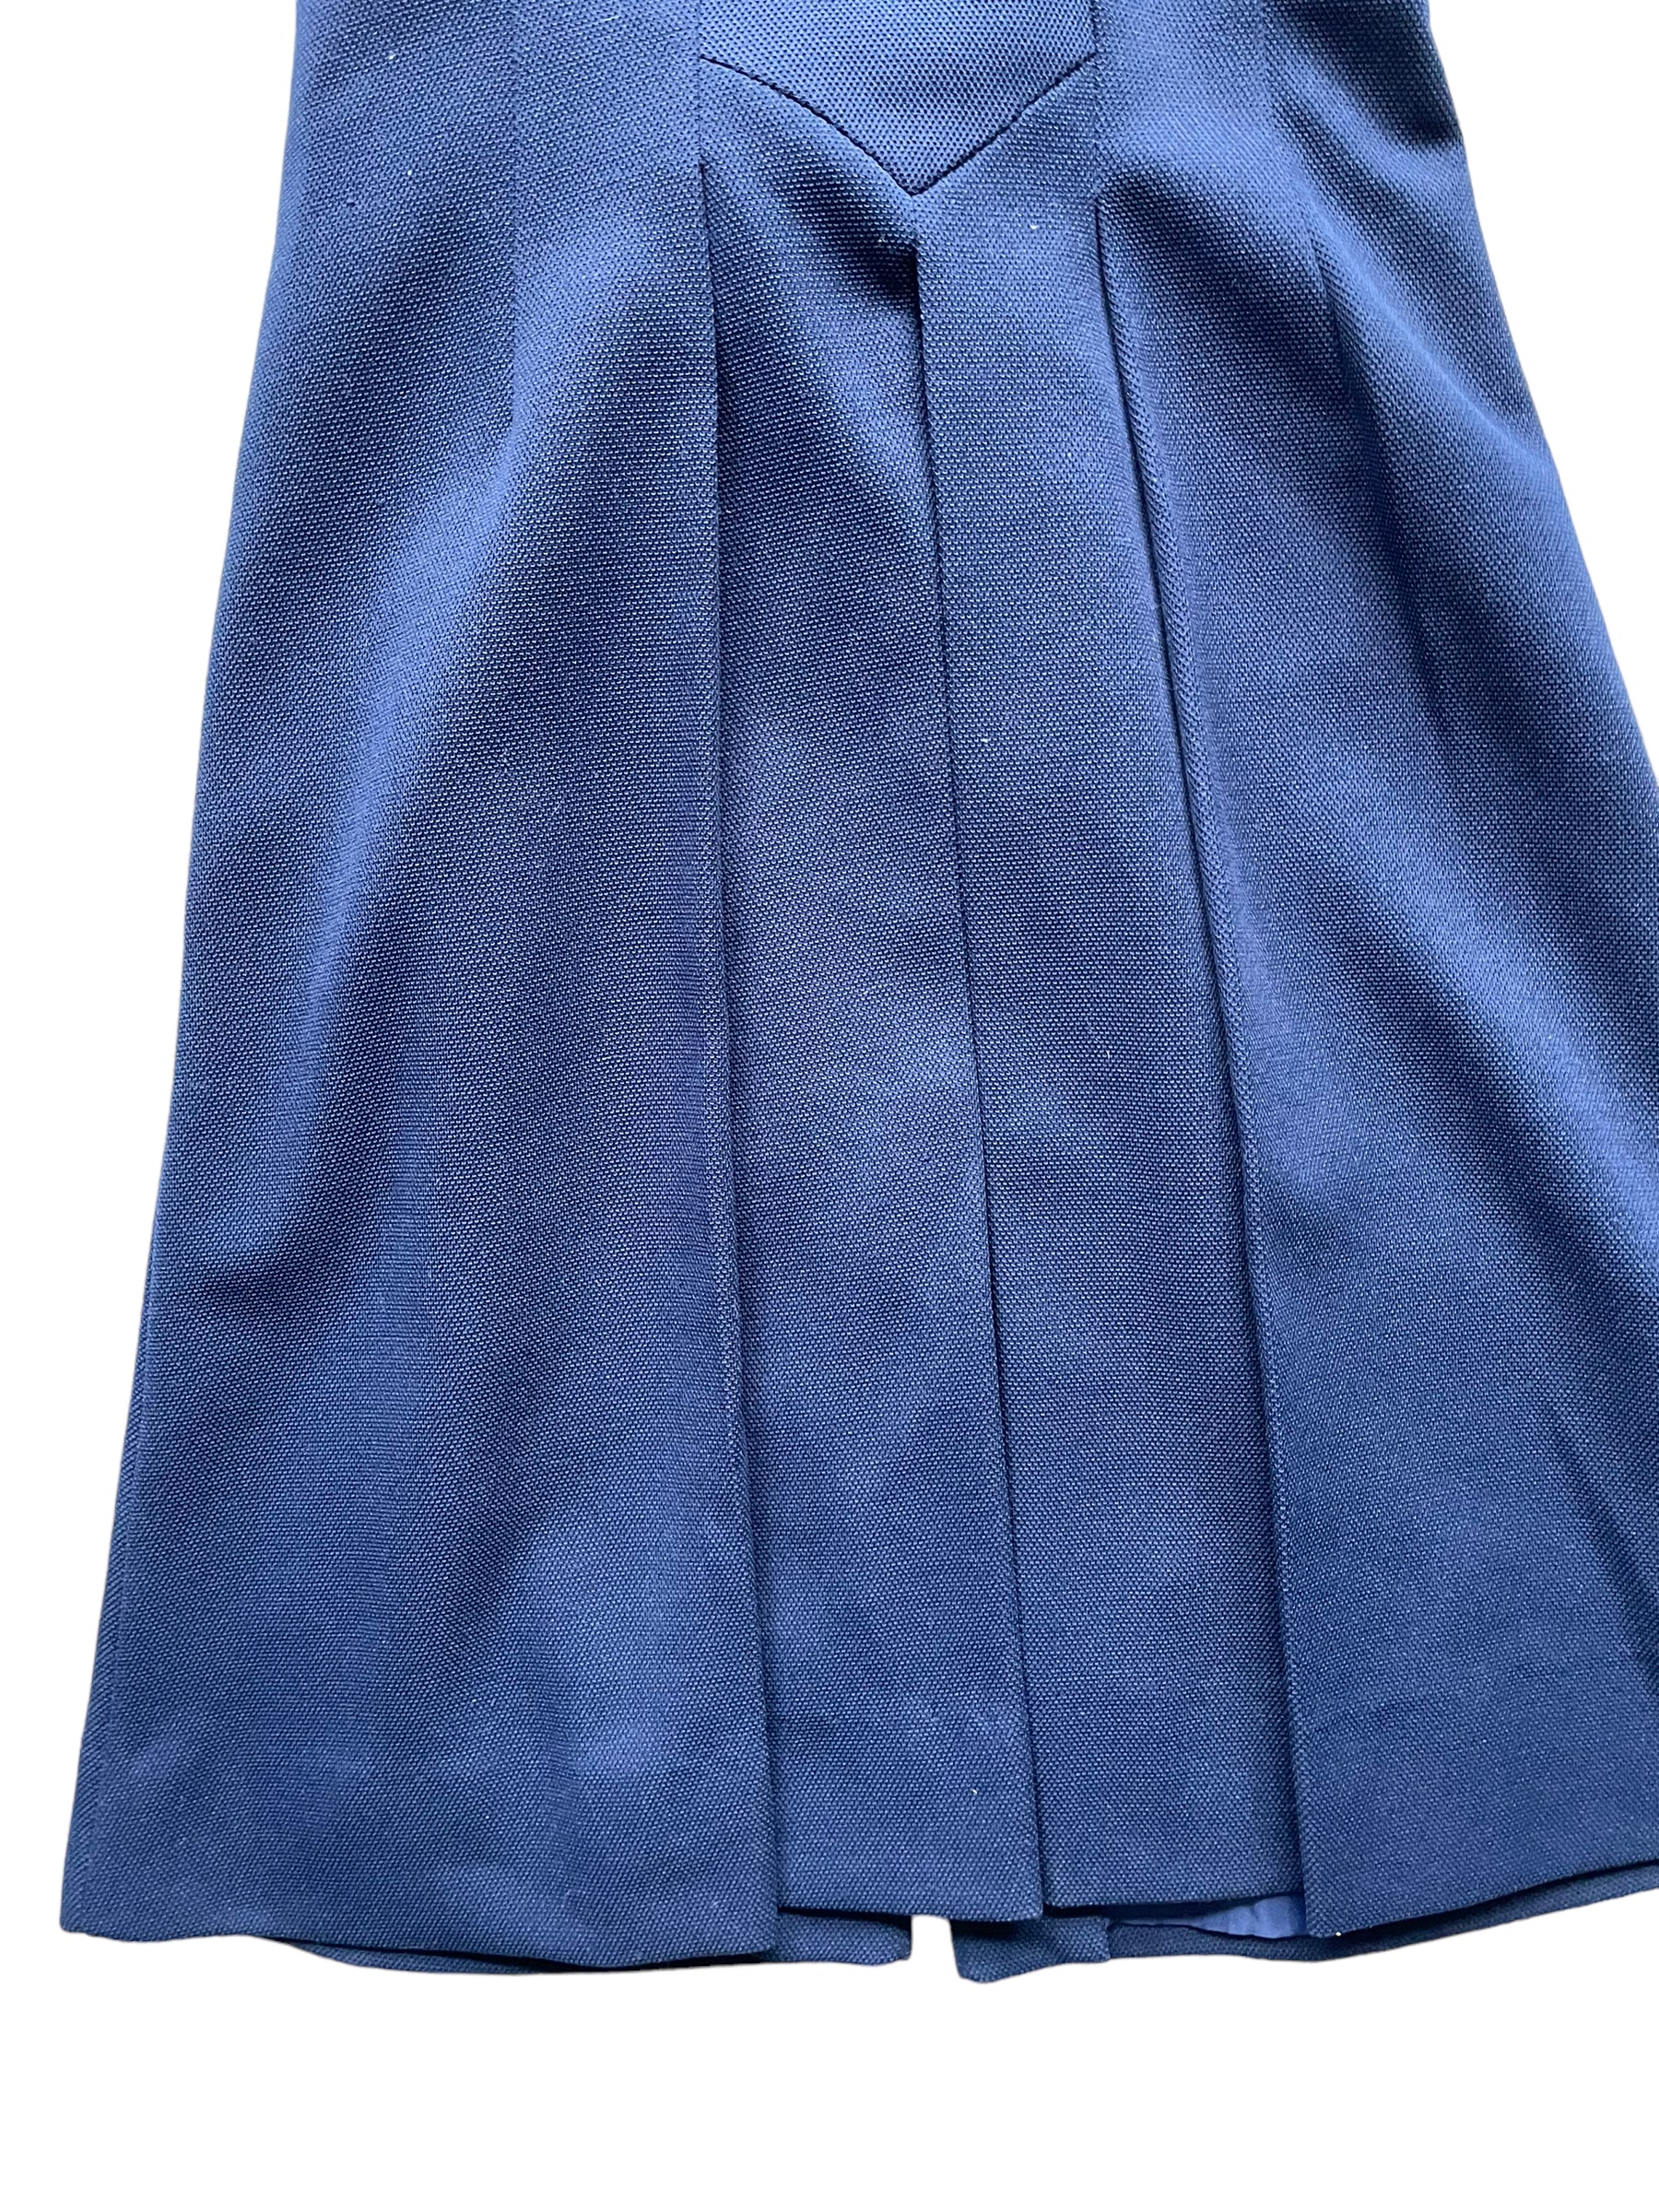 Back skirt view of Vintage 1960s Alfred Werber Long Heart Belted Vest